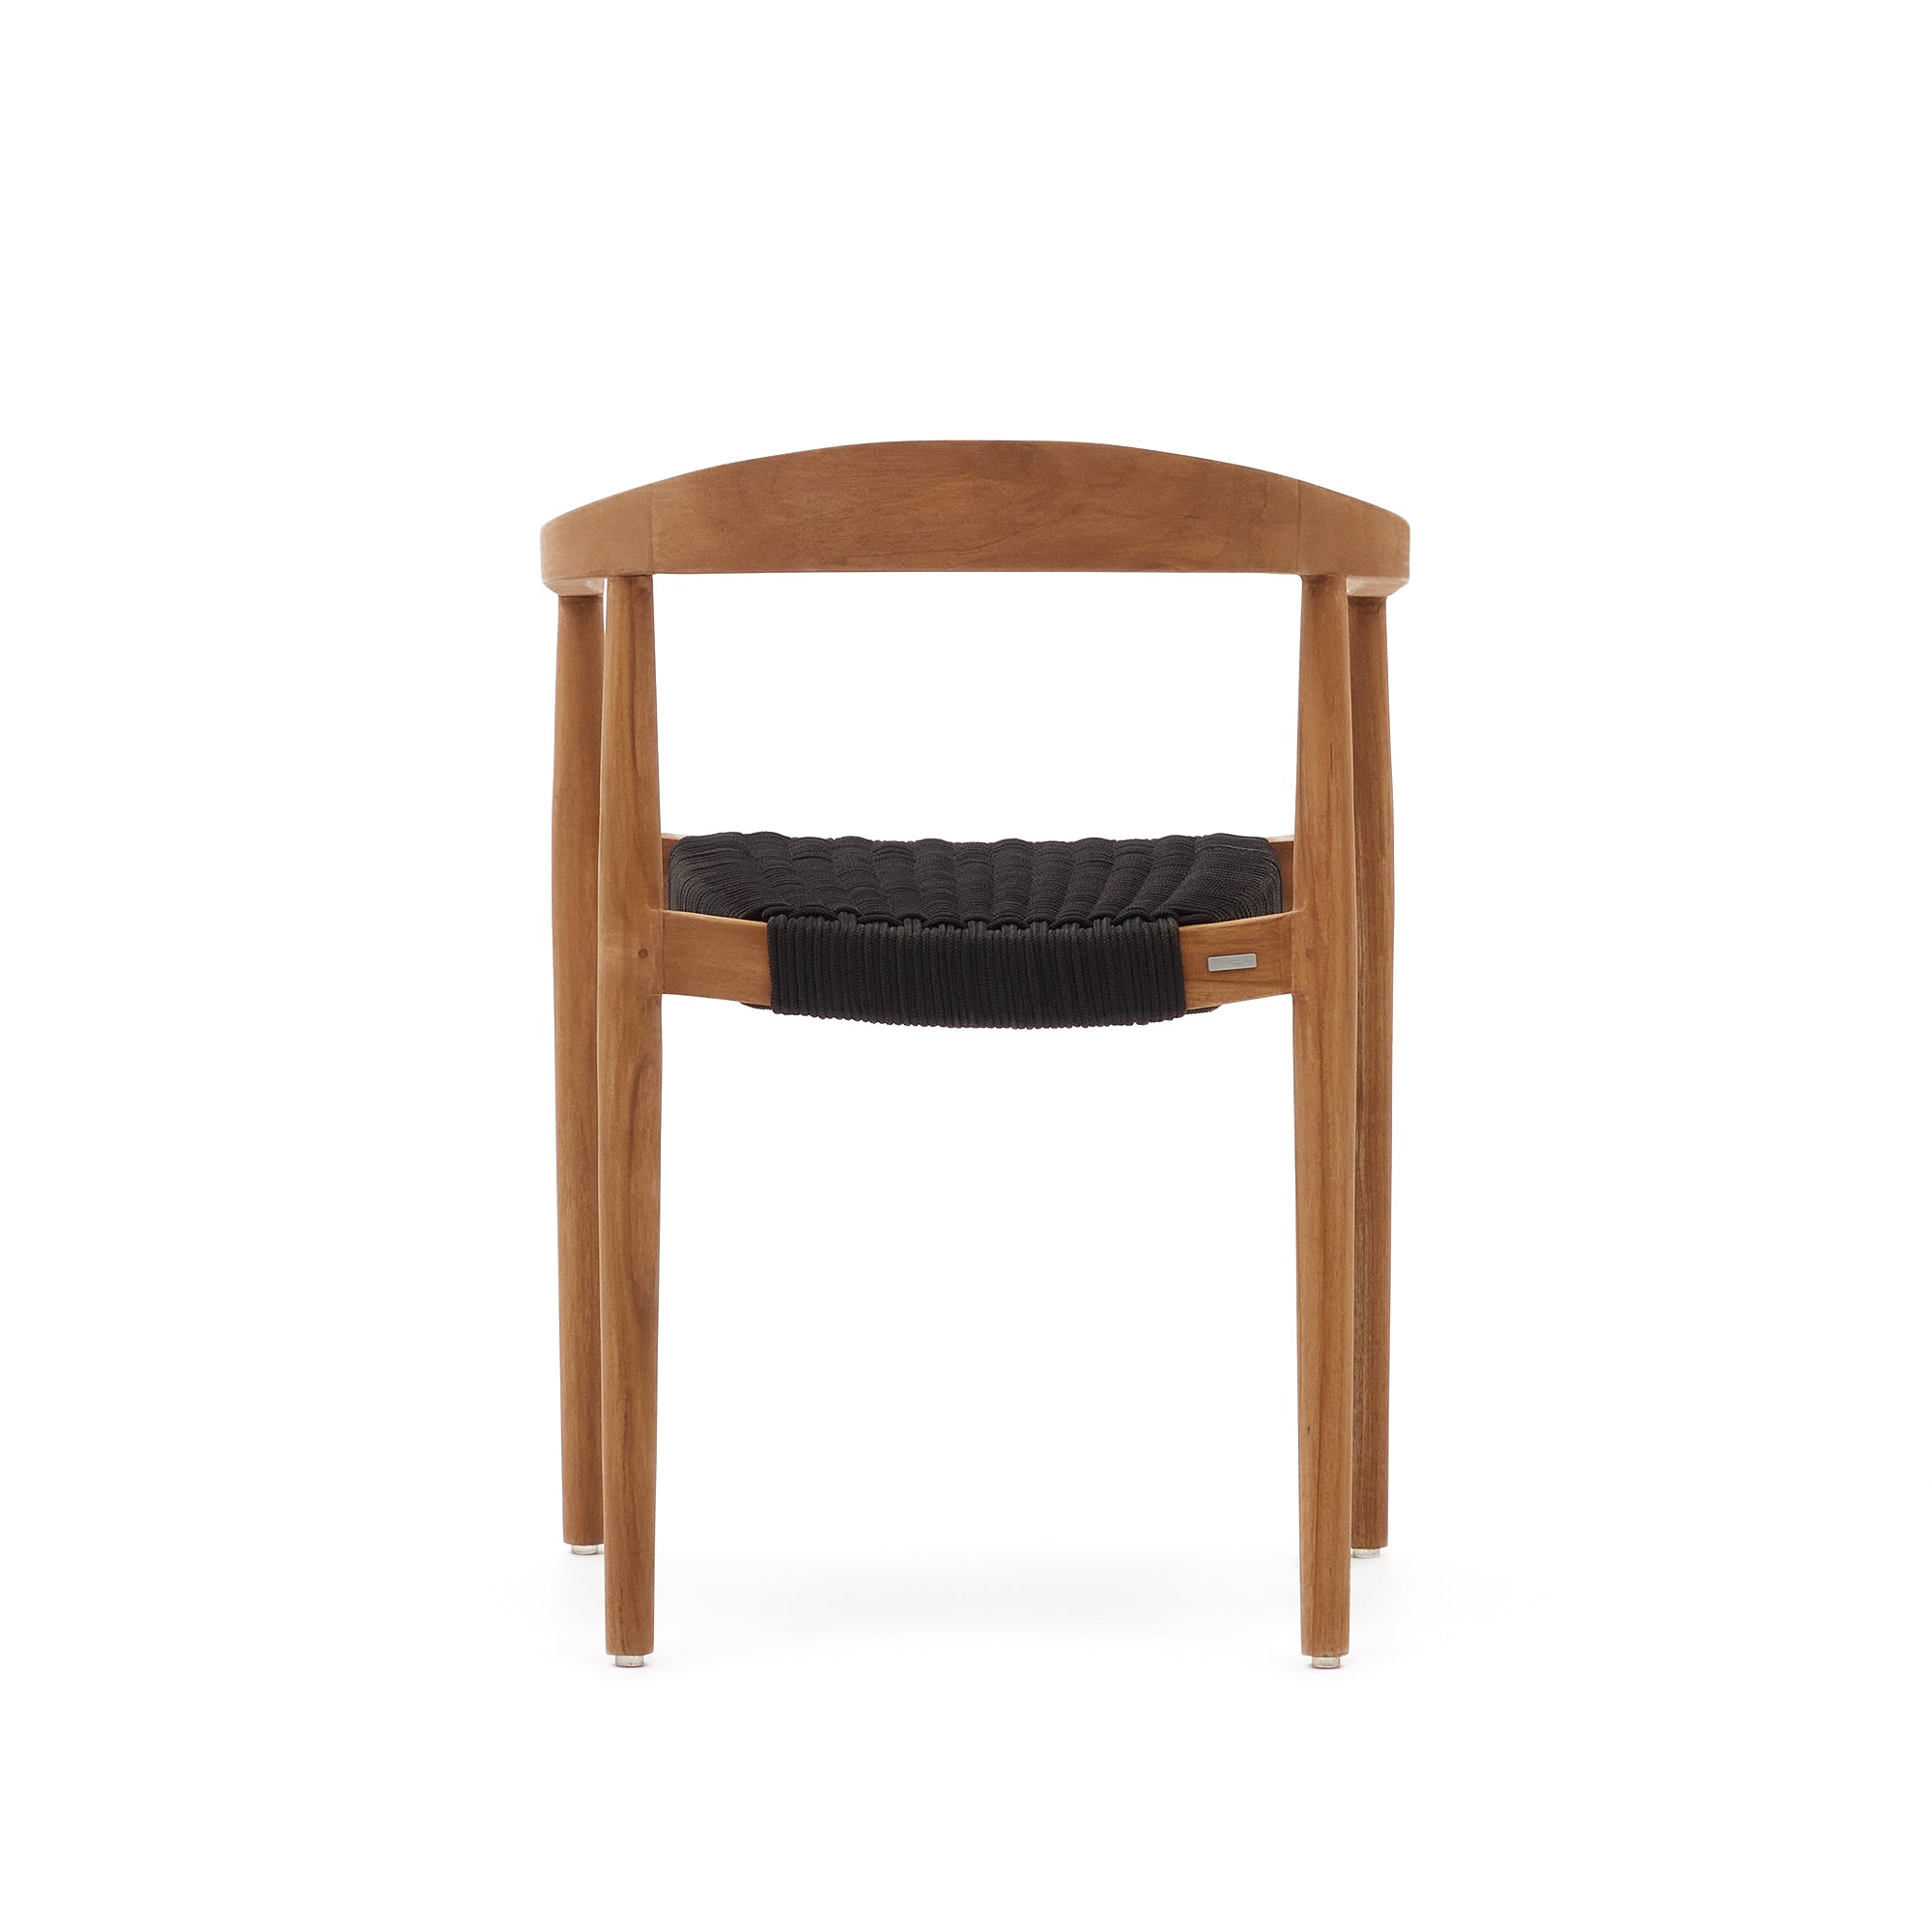 Ydalia egymásba rakható kültéri szék tömör teakfából, természetes kivitelben és fekete kötéllel.